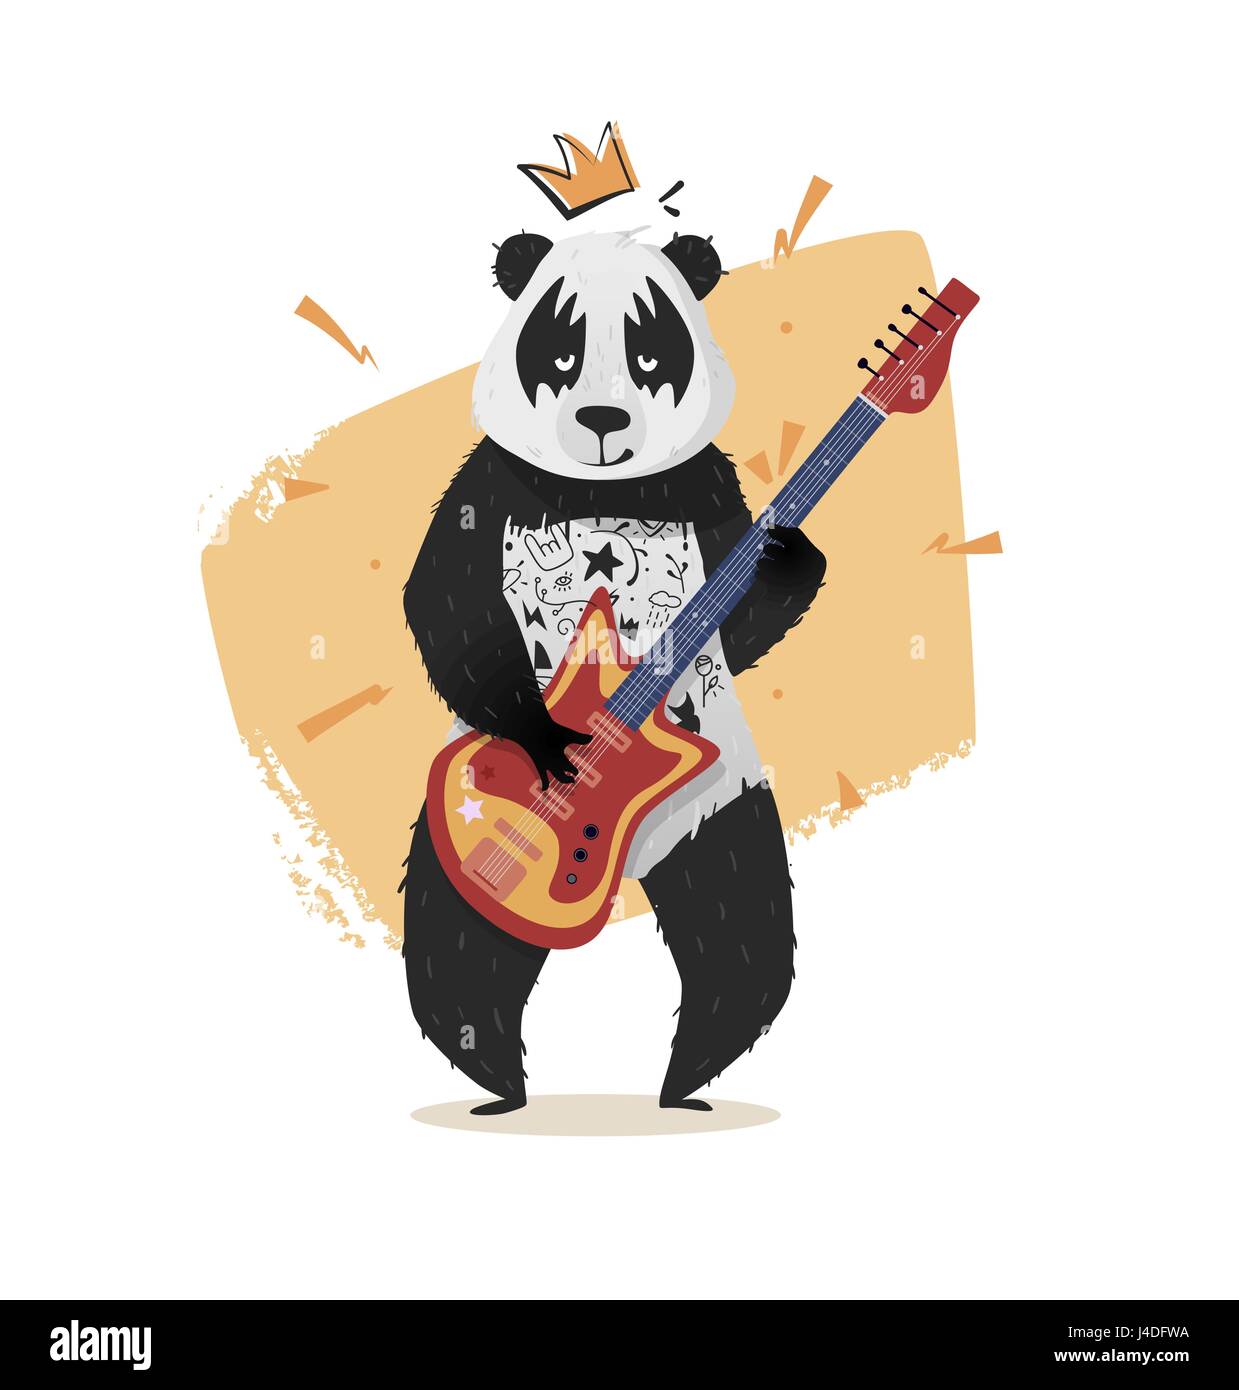 Panda mit einer Krone spielt Gitarre. Eine helle Illustration für Print-on-a-t-Shirt, Abdeckung, Plakat. Vektor-Grafiken. Stock Vektor